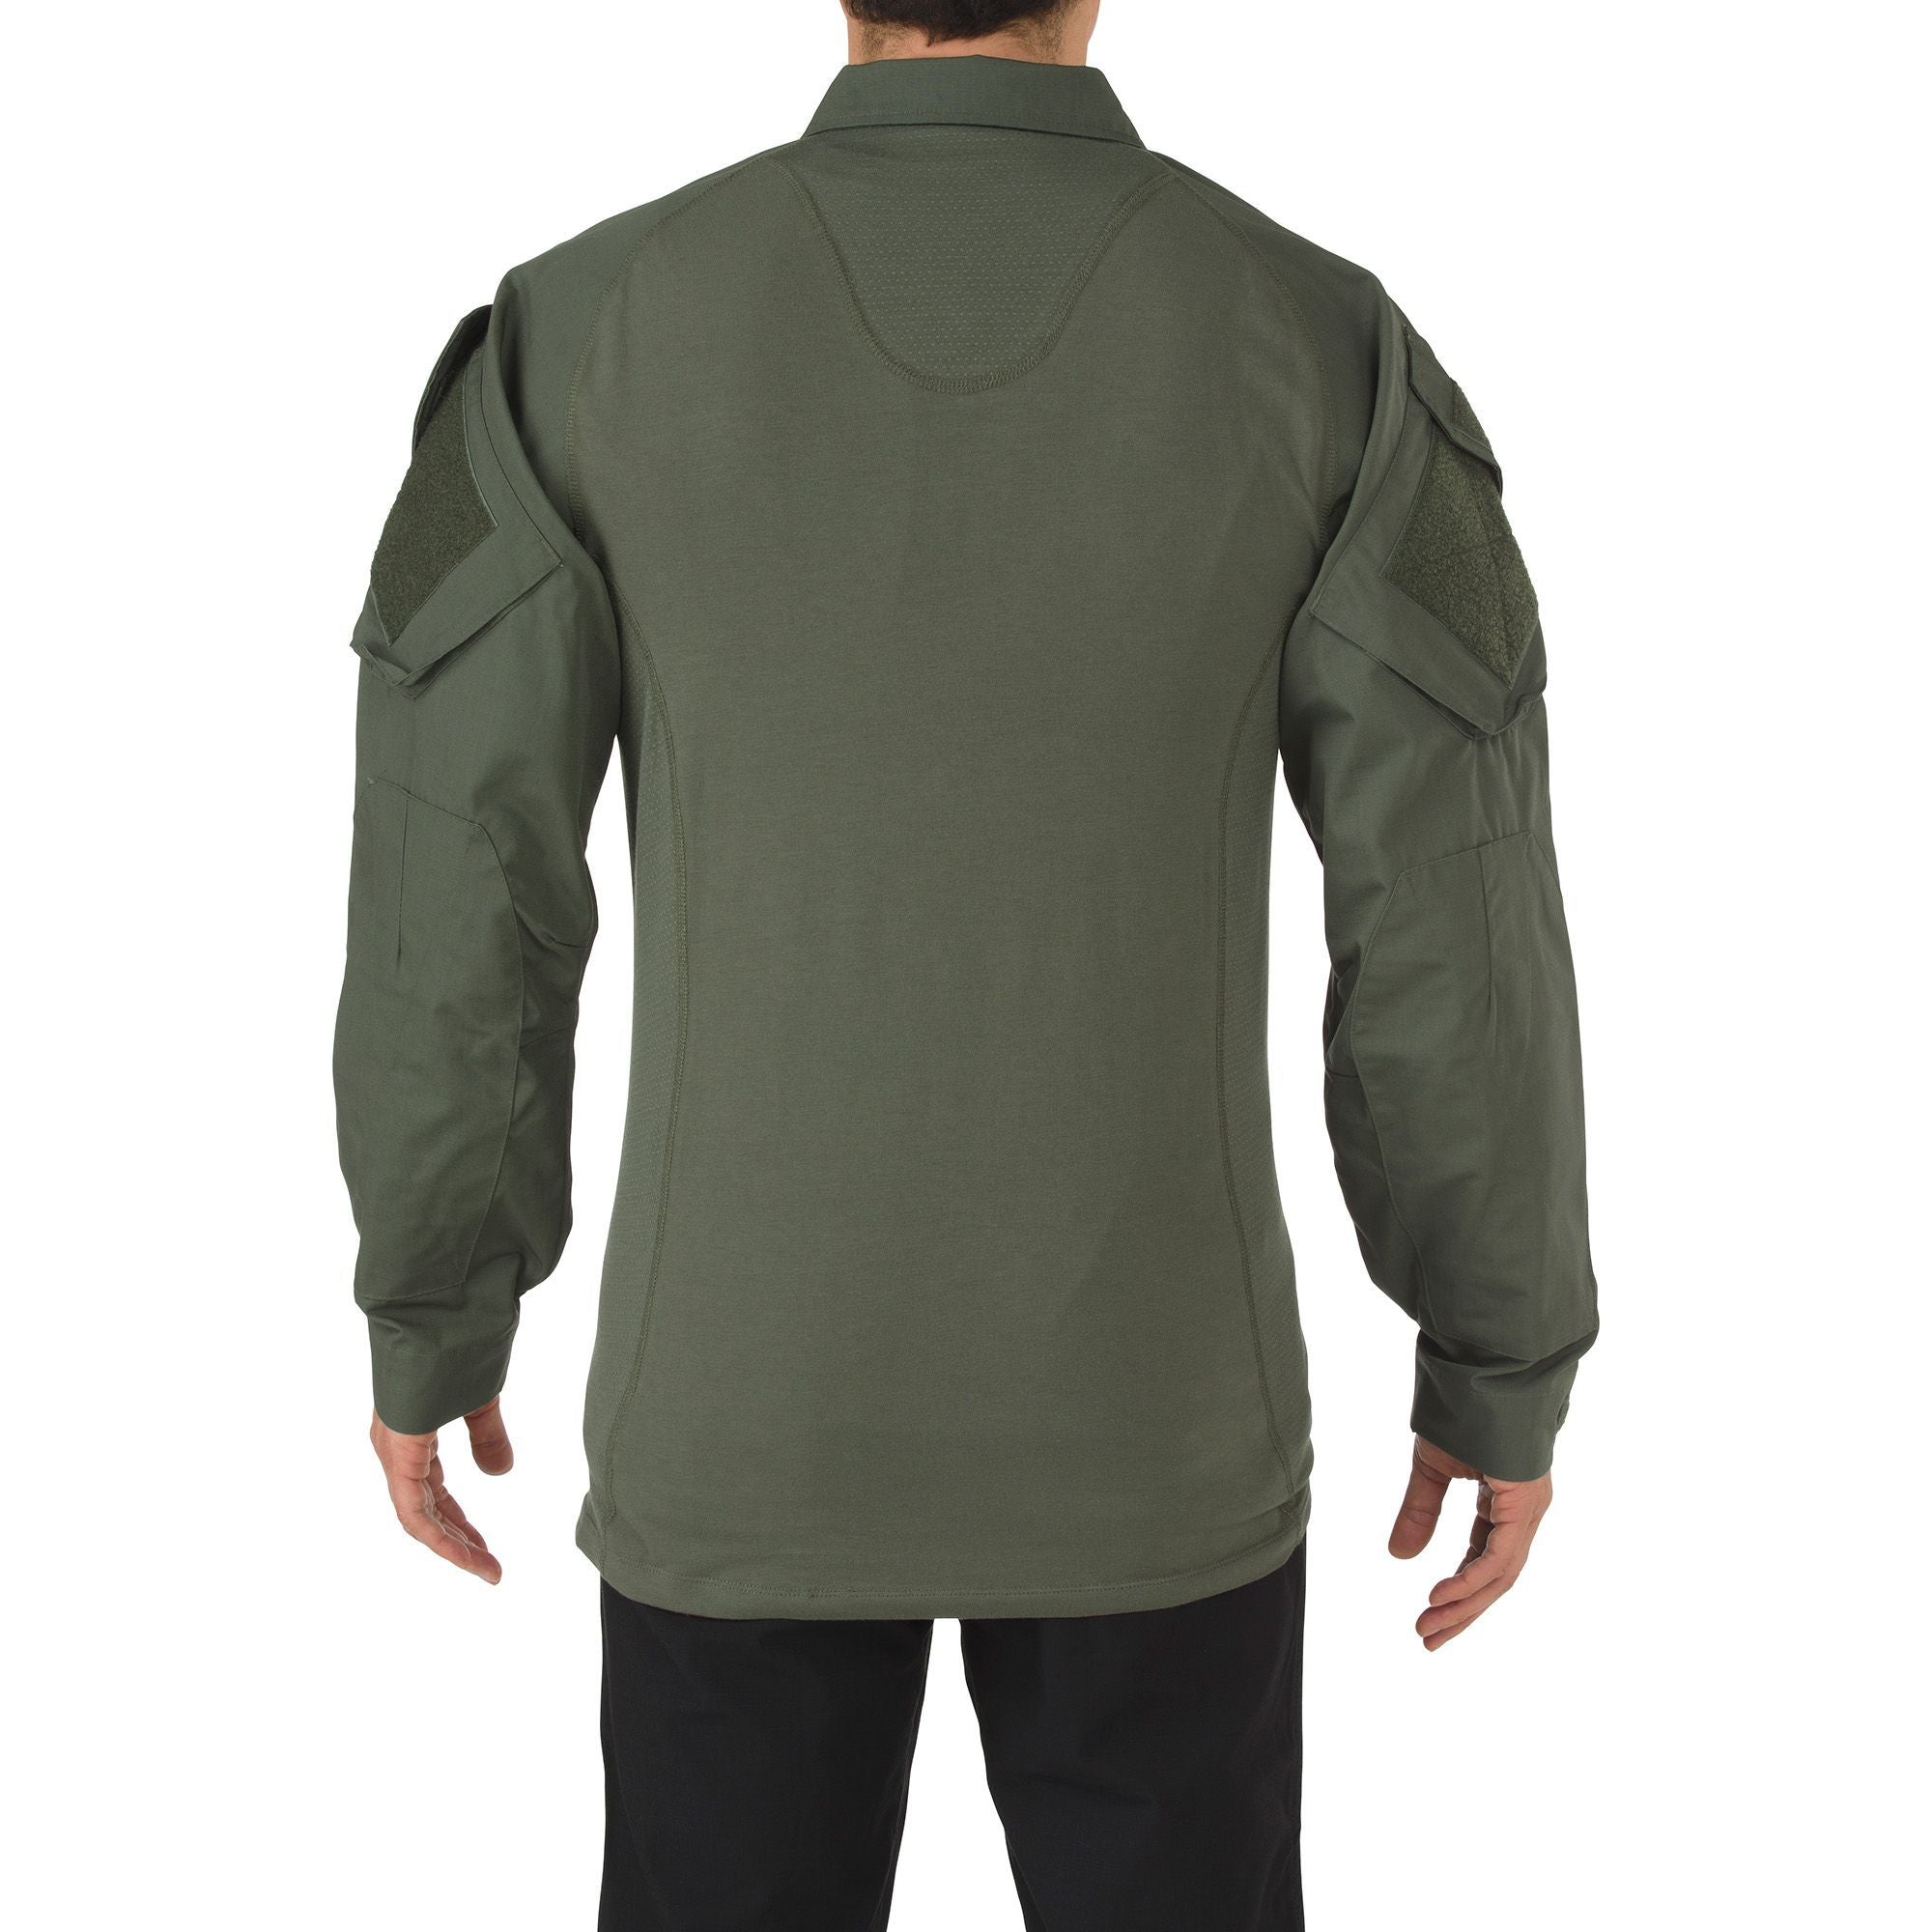 5.11 Tactical Rapid Assault Shirt TDU Green Shirts 5.11 Tactical Tactical Gear Supplier Tactical Distributors Australia